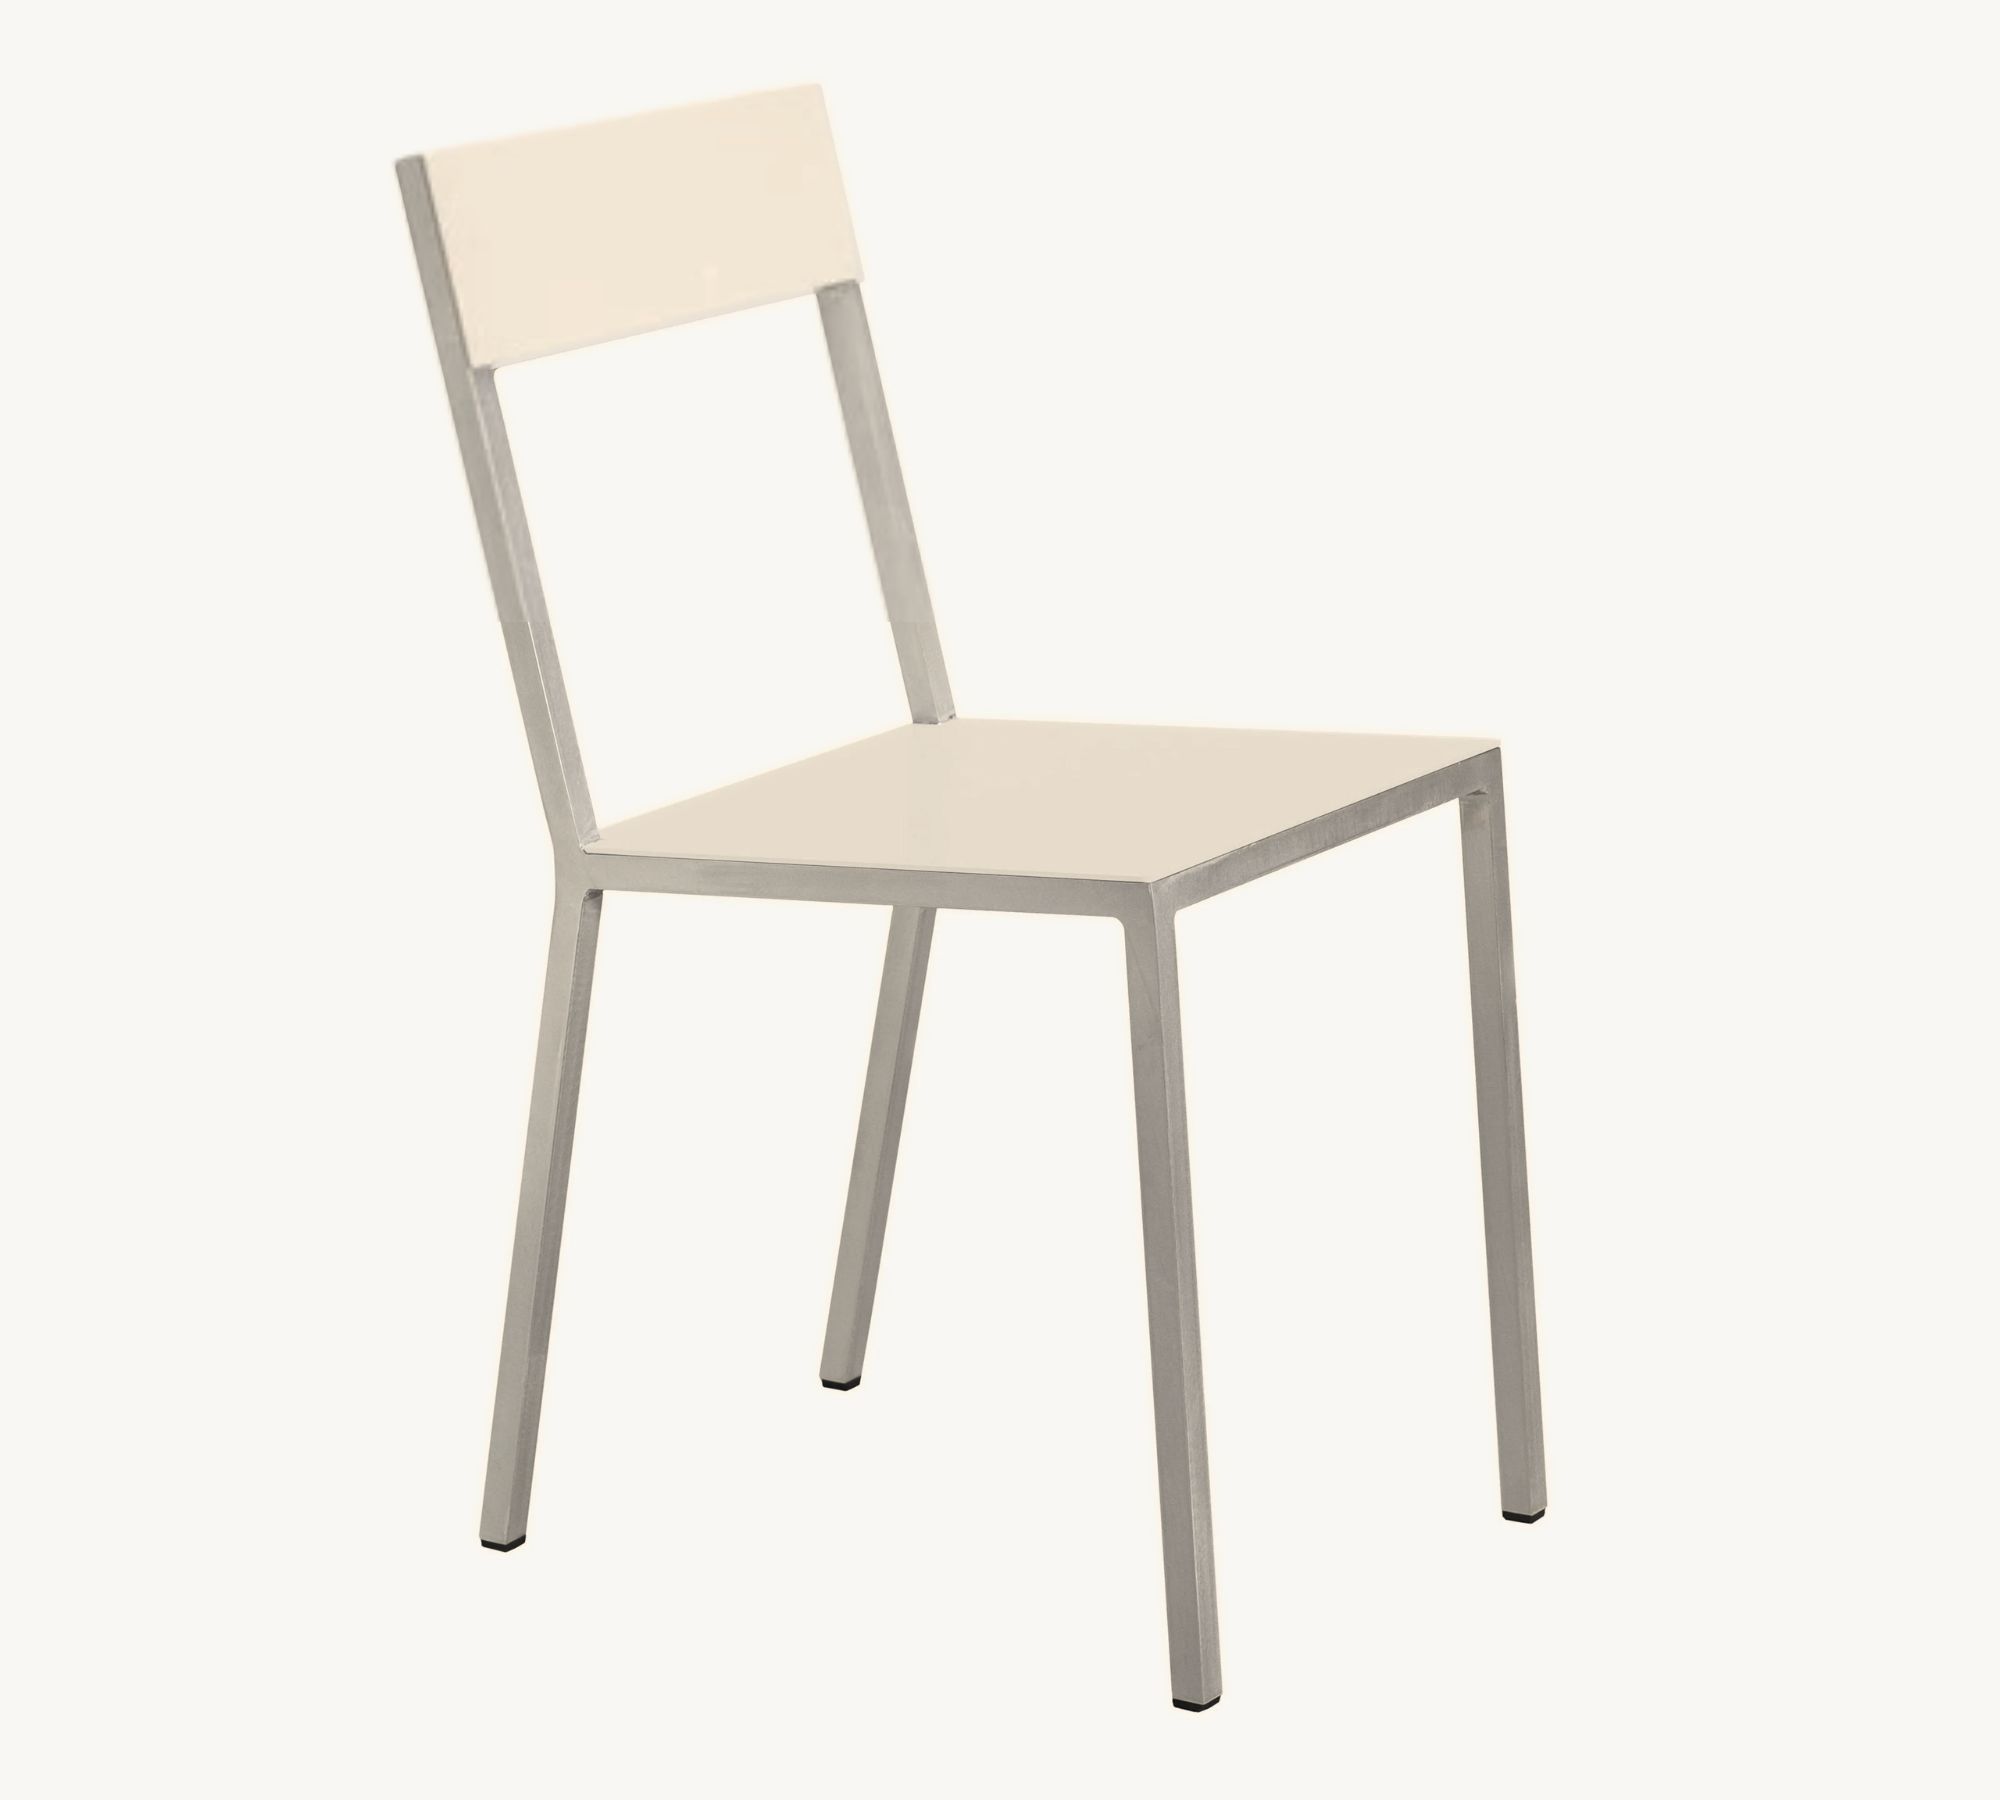 Alu Chair Stuhl Metall Creme